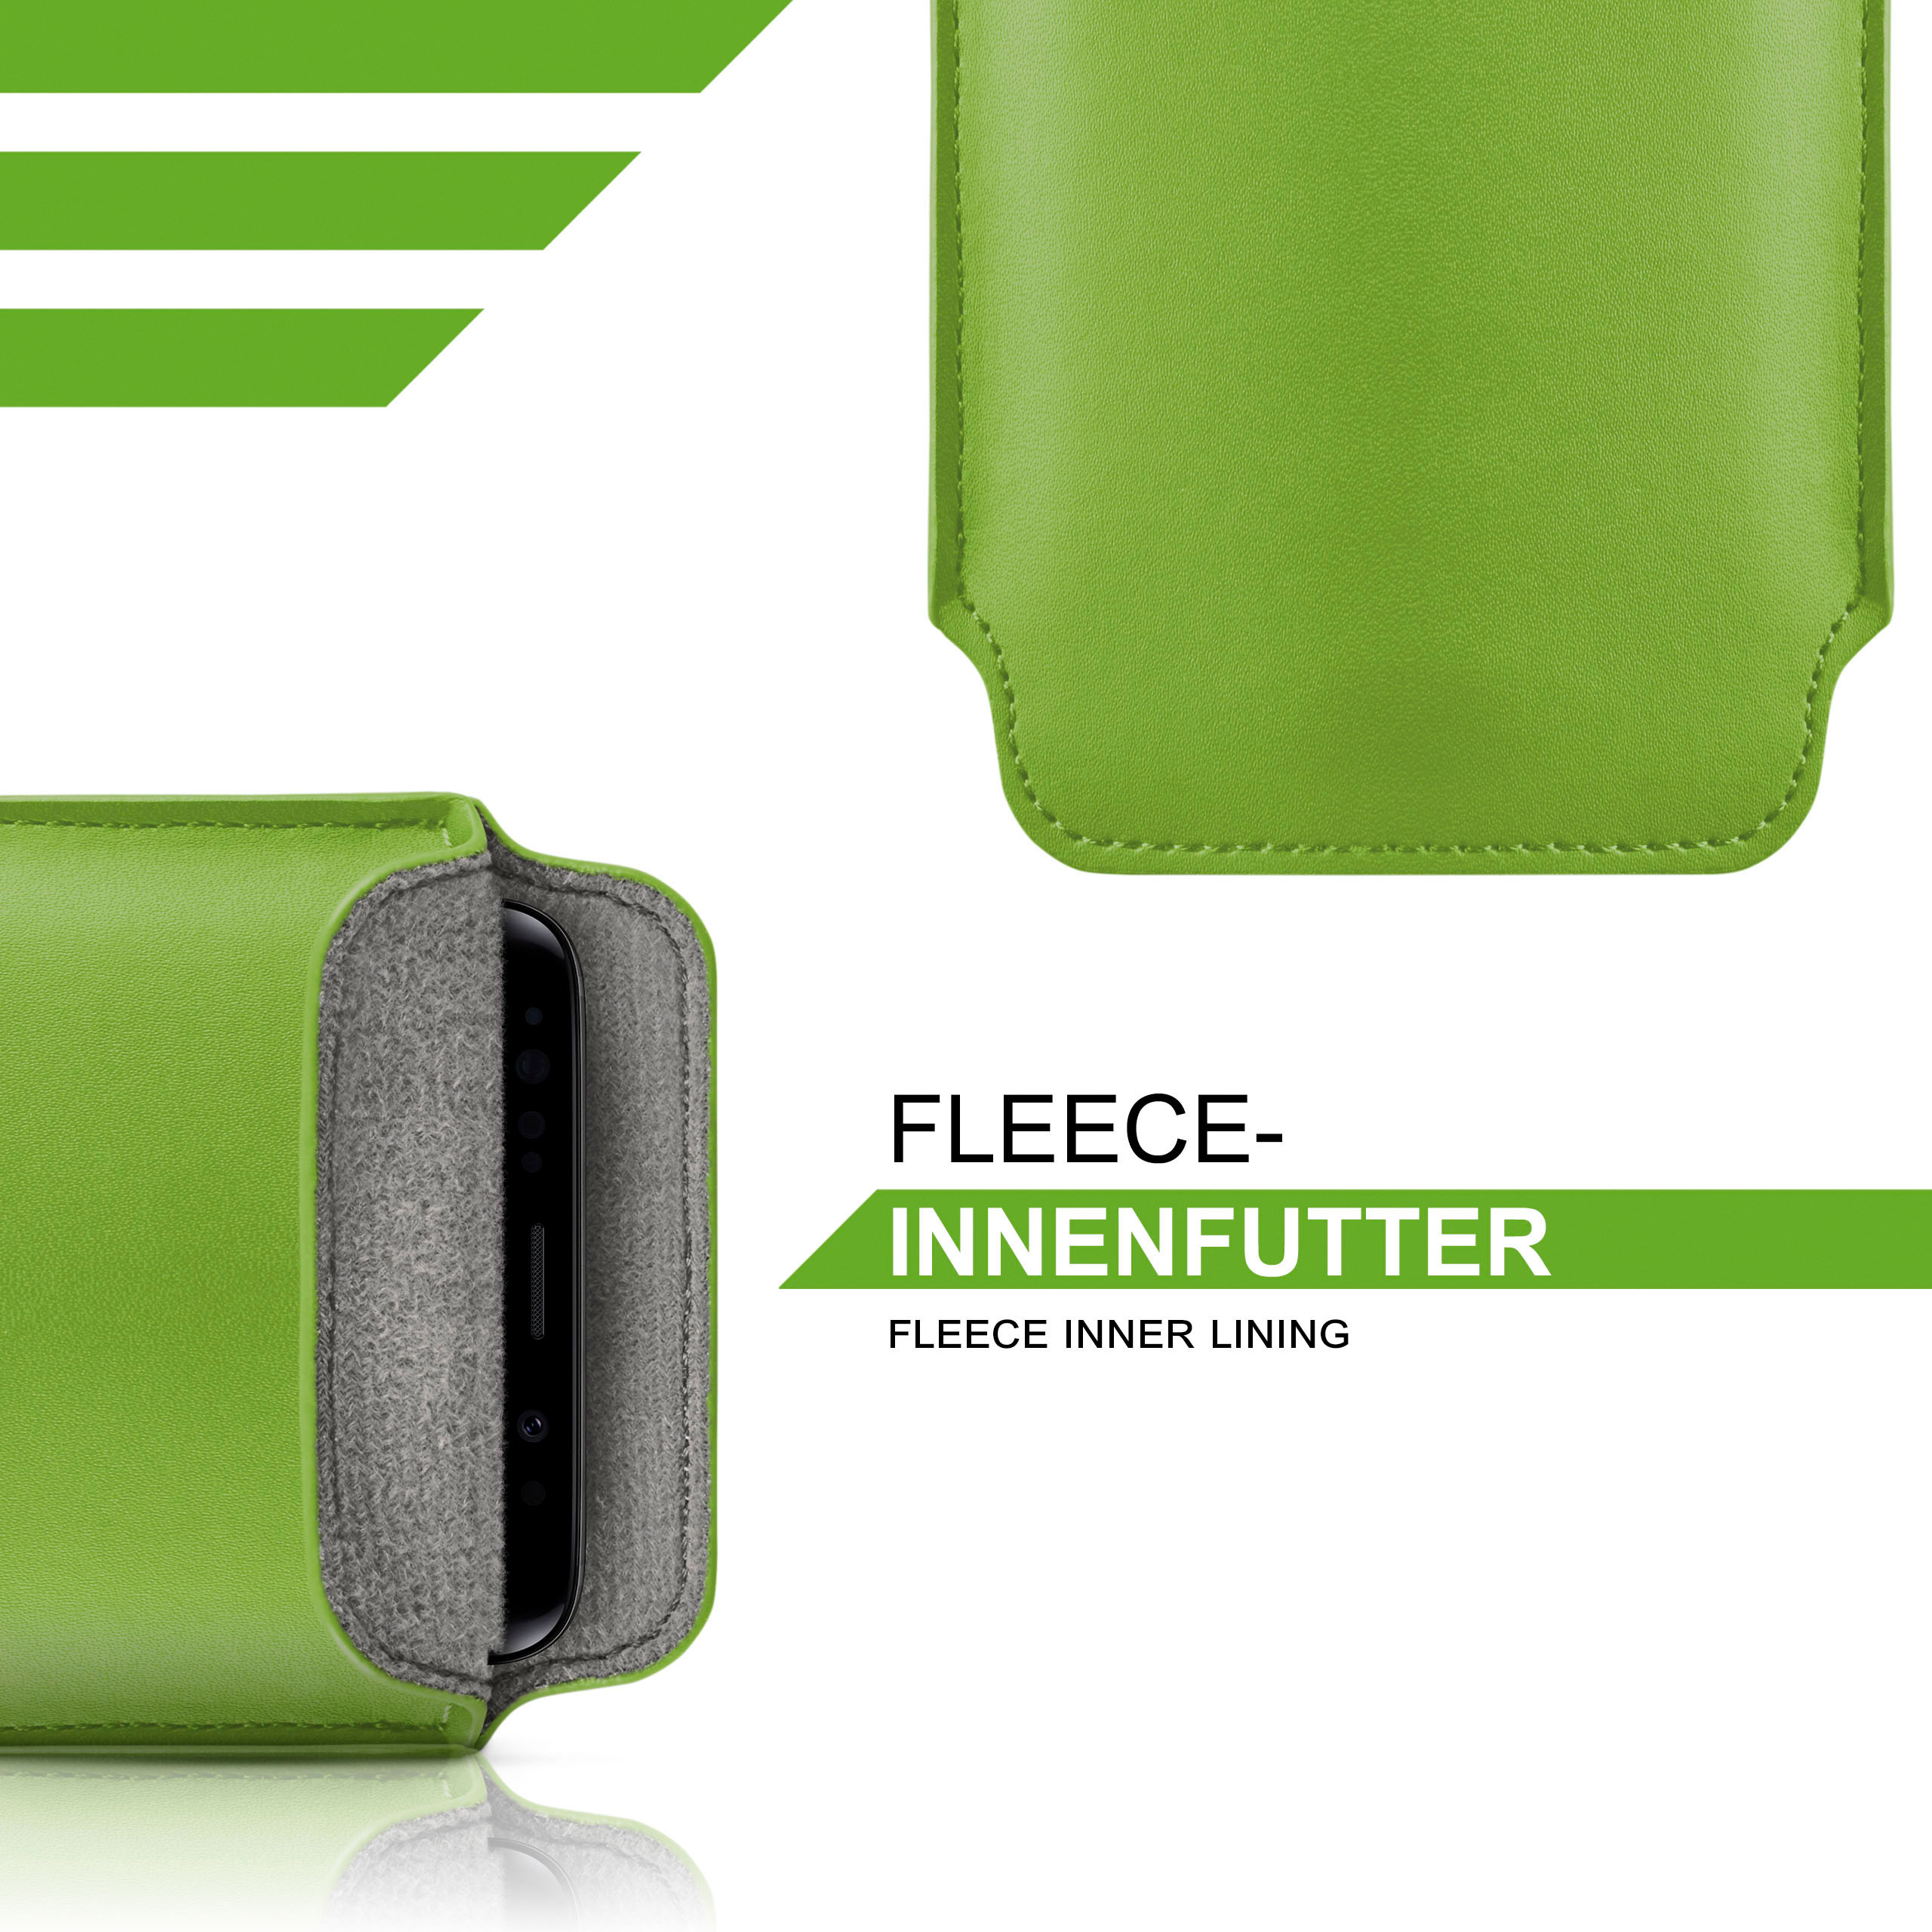 MOEX Slide Case, Full Cover, Sony, II, 10 Xperia Lime-Green